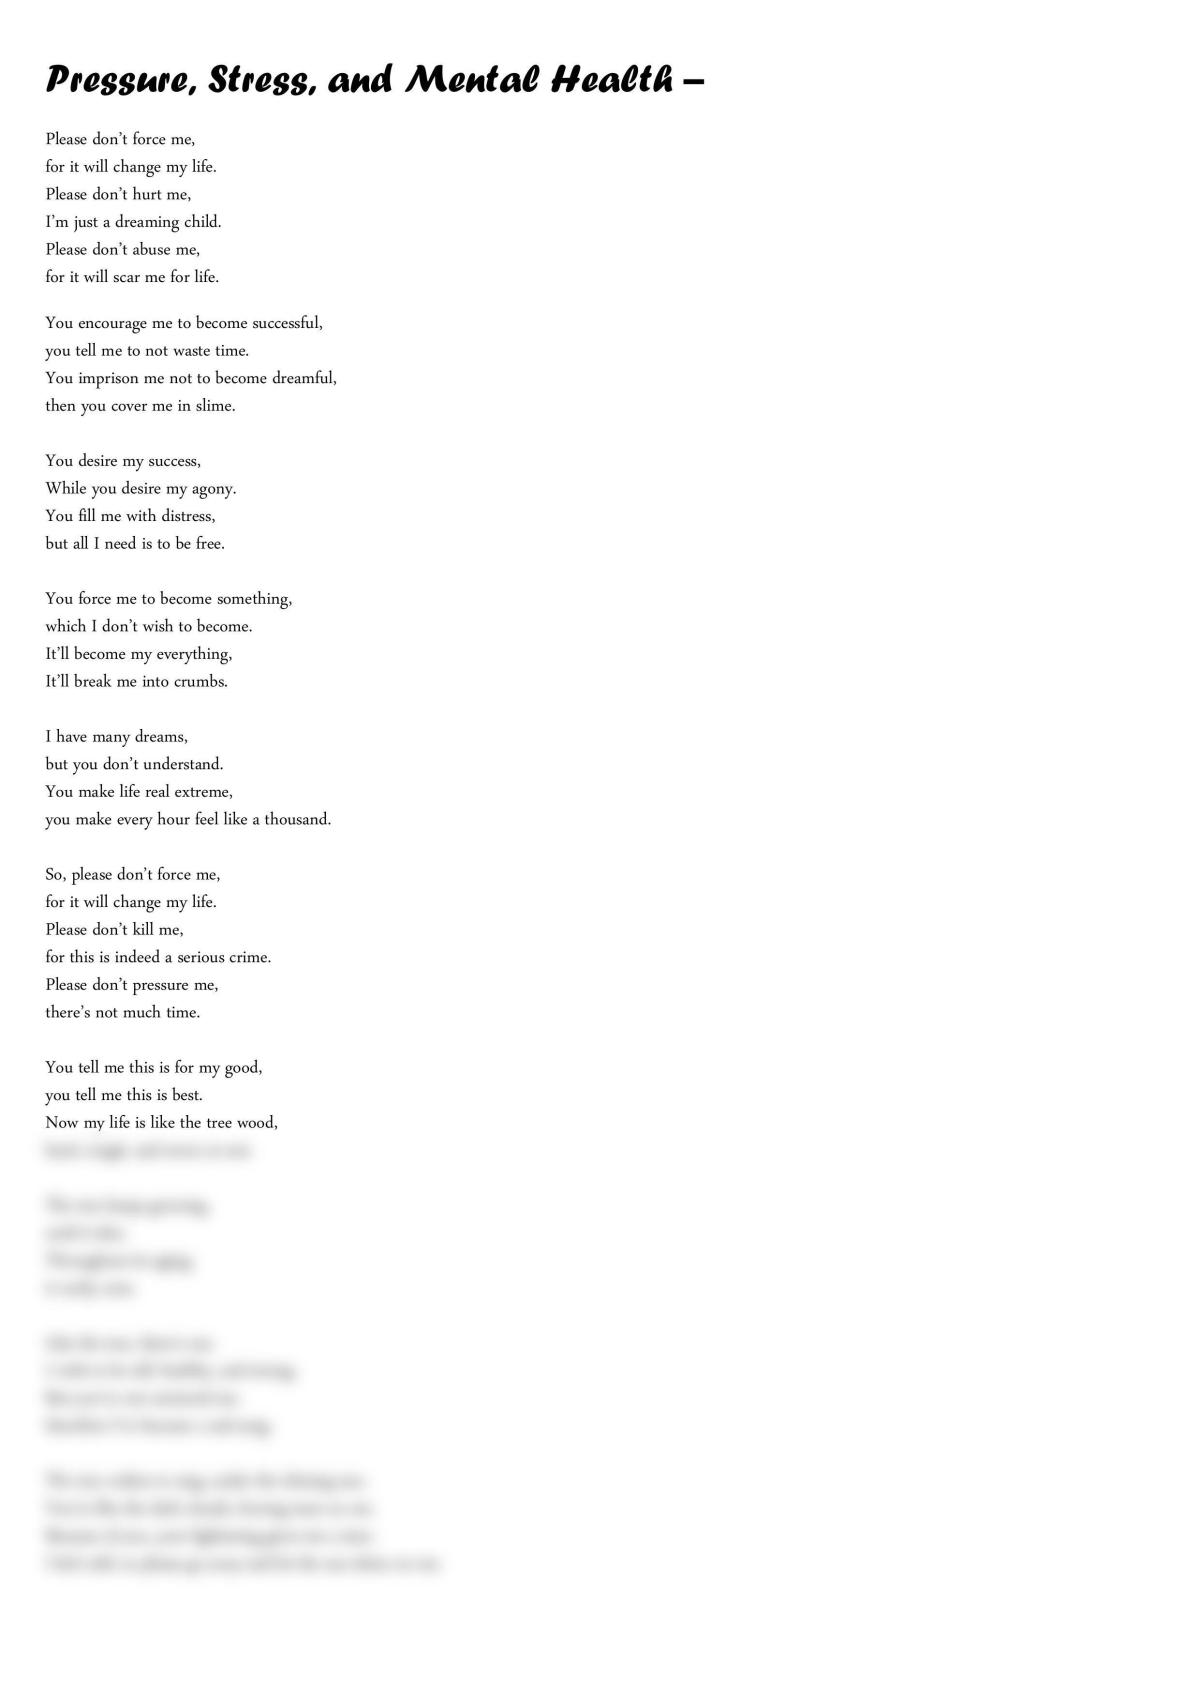 slam poem assignment